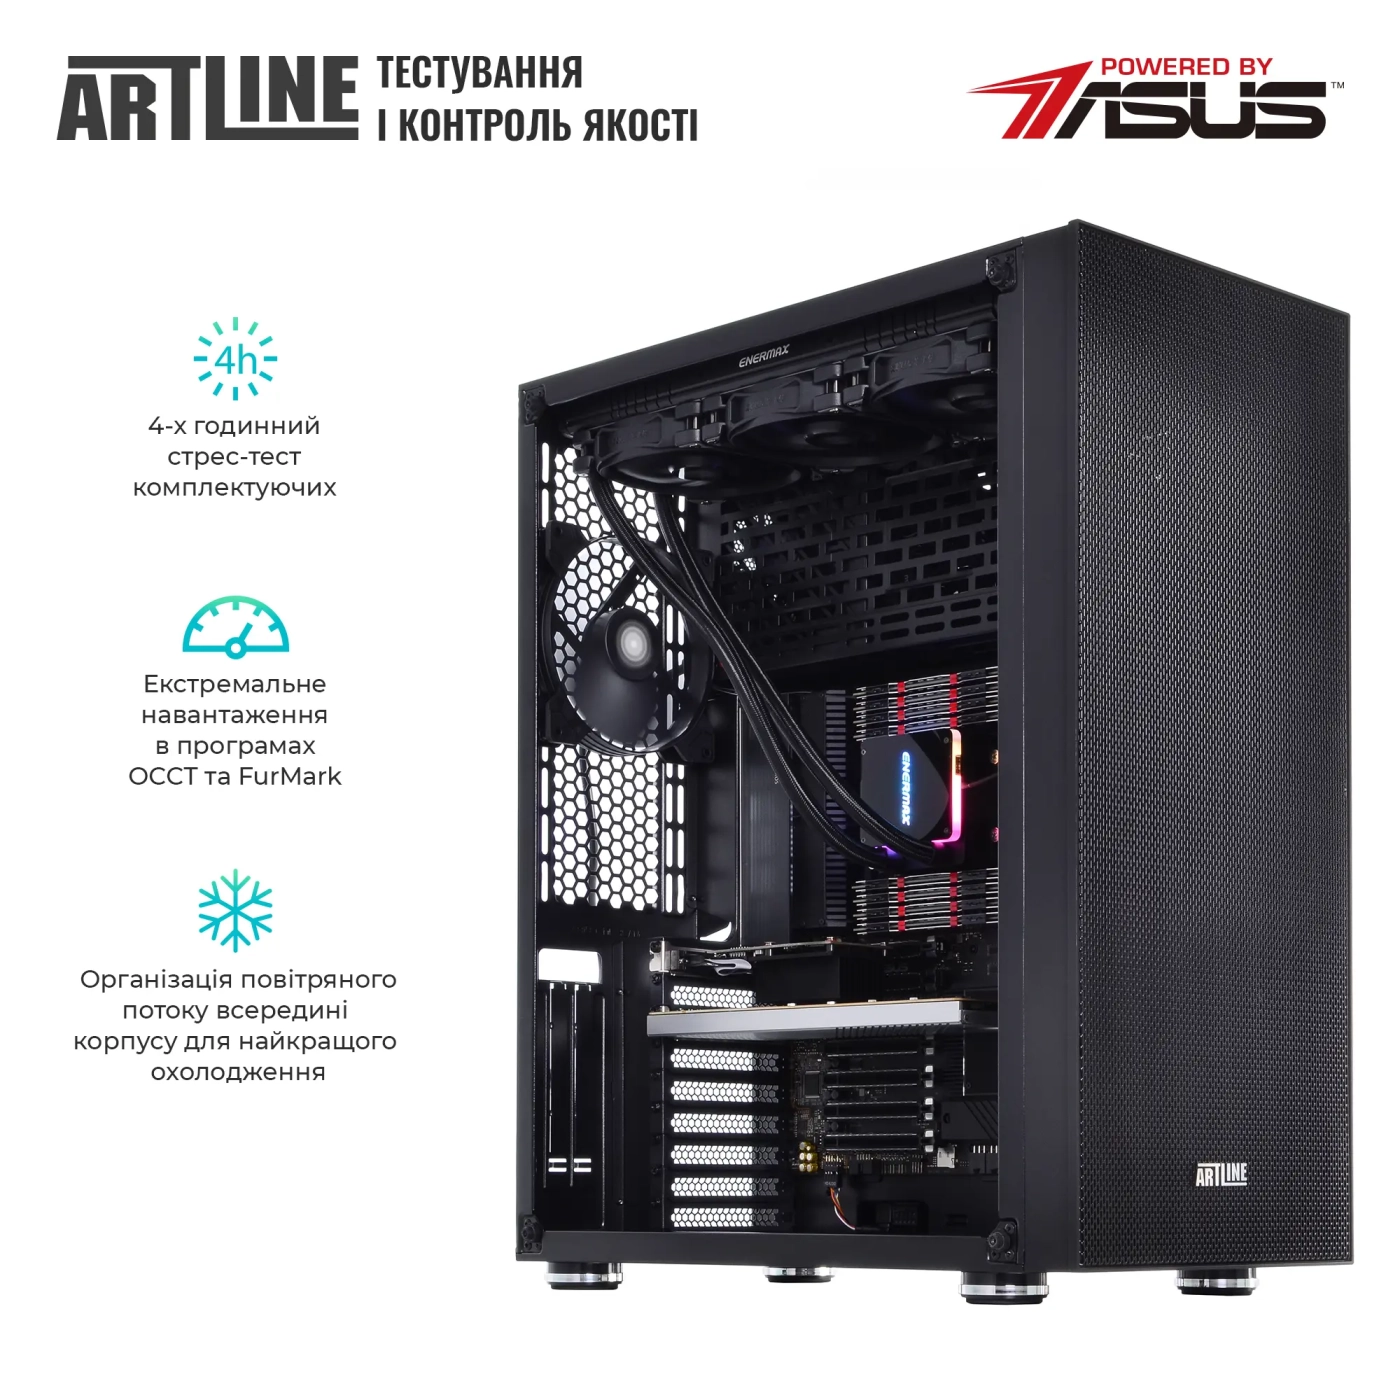 Купить Сервер ARTLINE Business T85v05 - фото 7